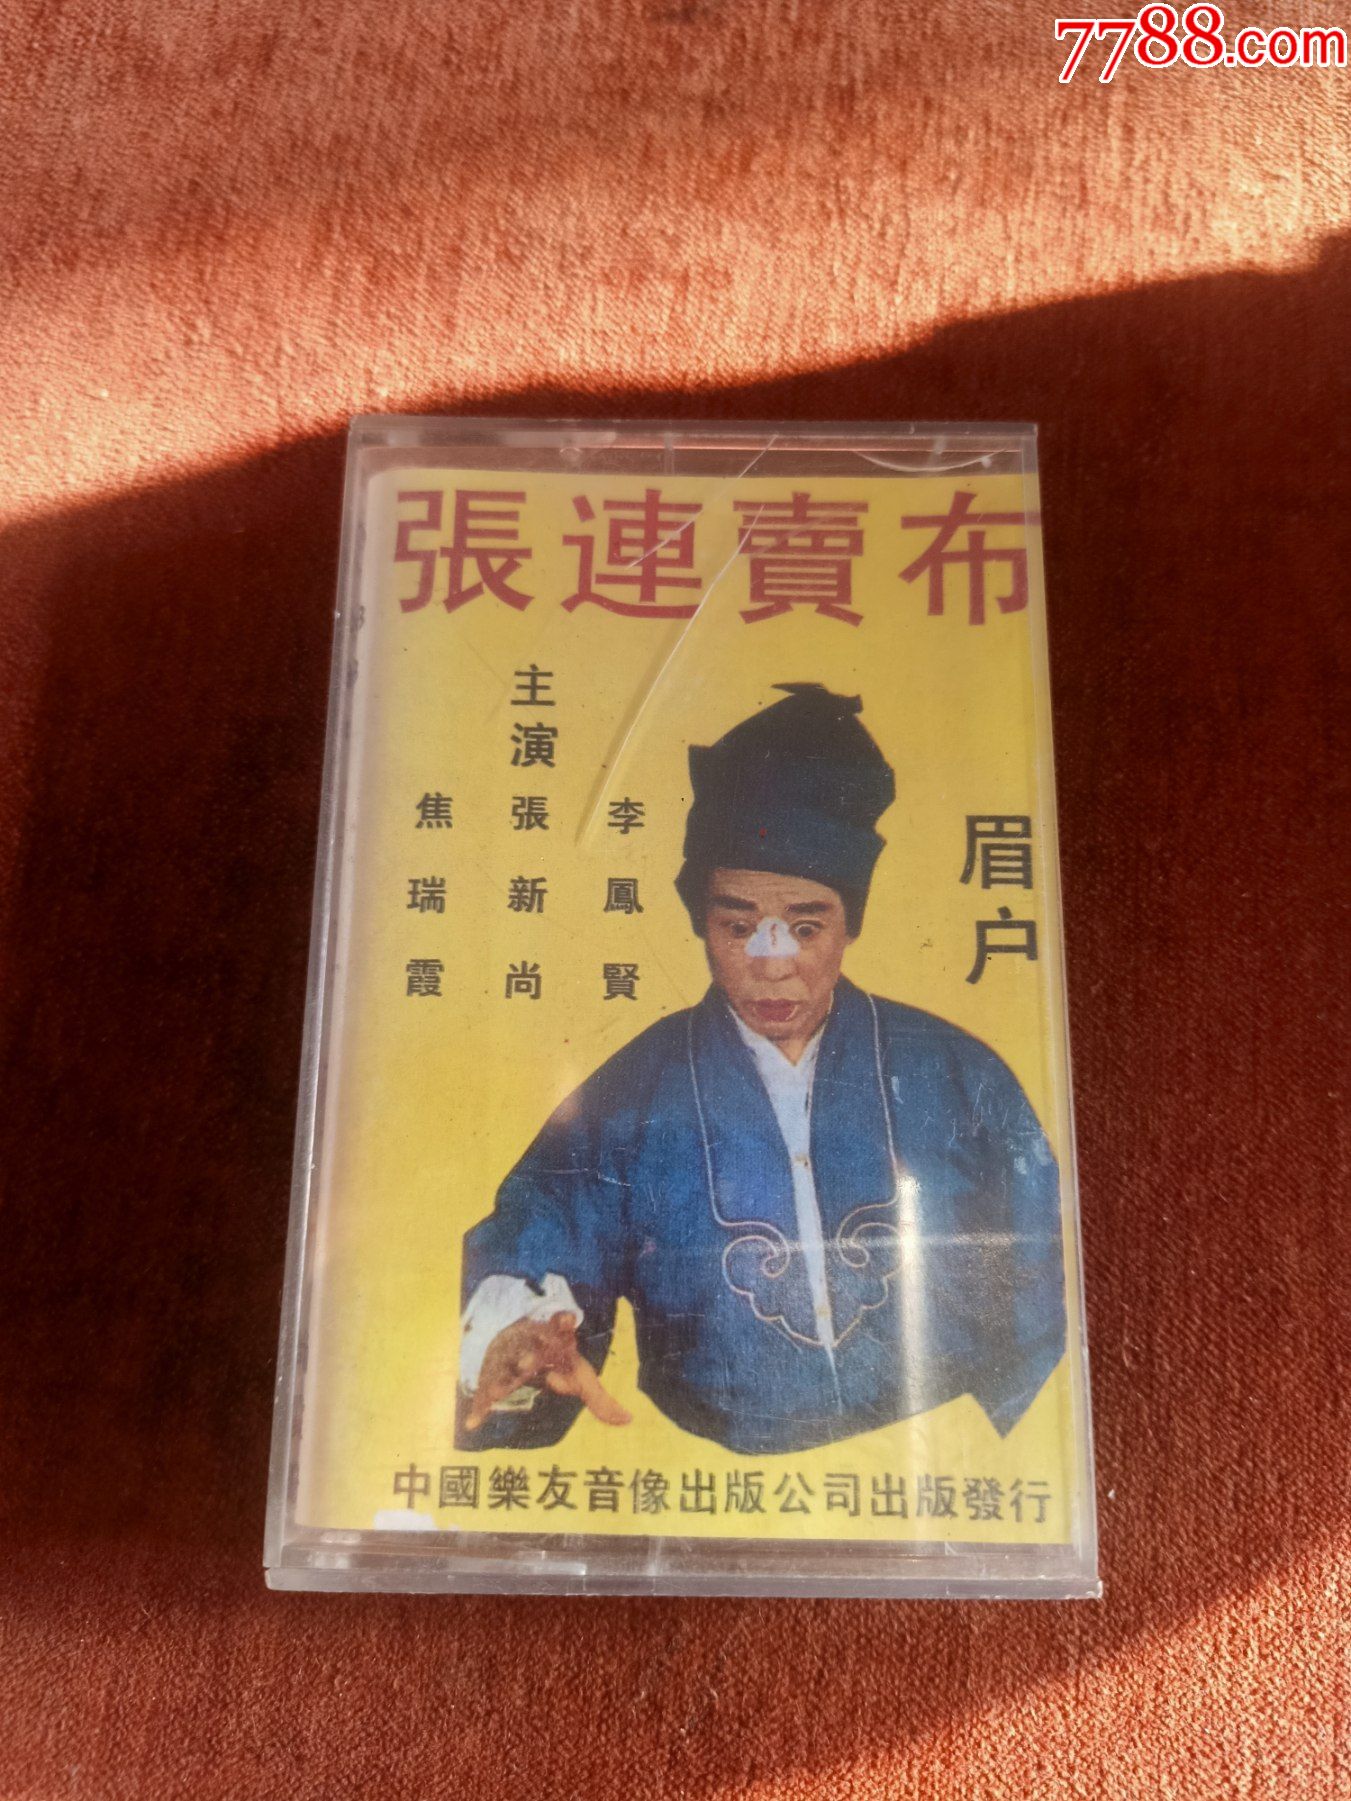 眉户《张连卖布》磁带,李凤贤,张新尚,焦瑞侠演唱,中国乐友音像出版